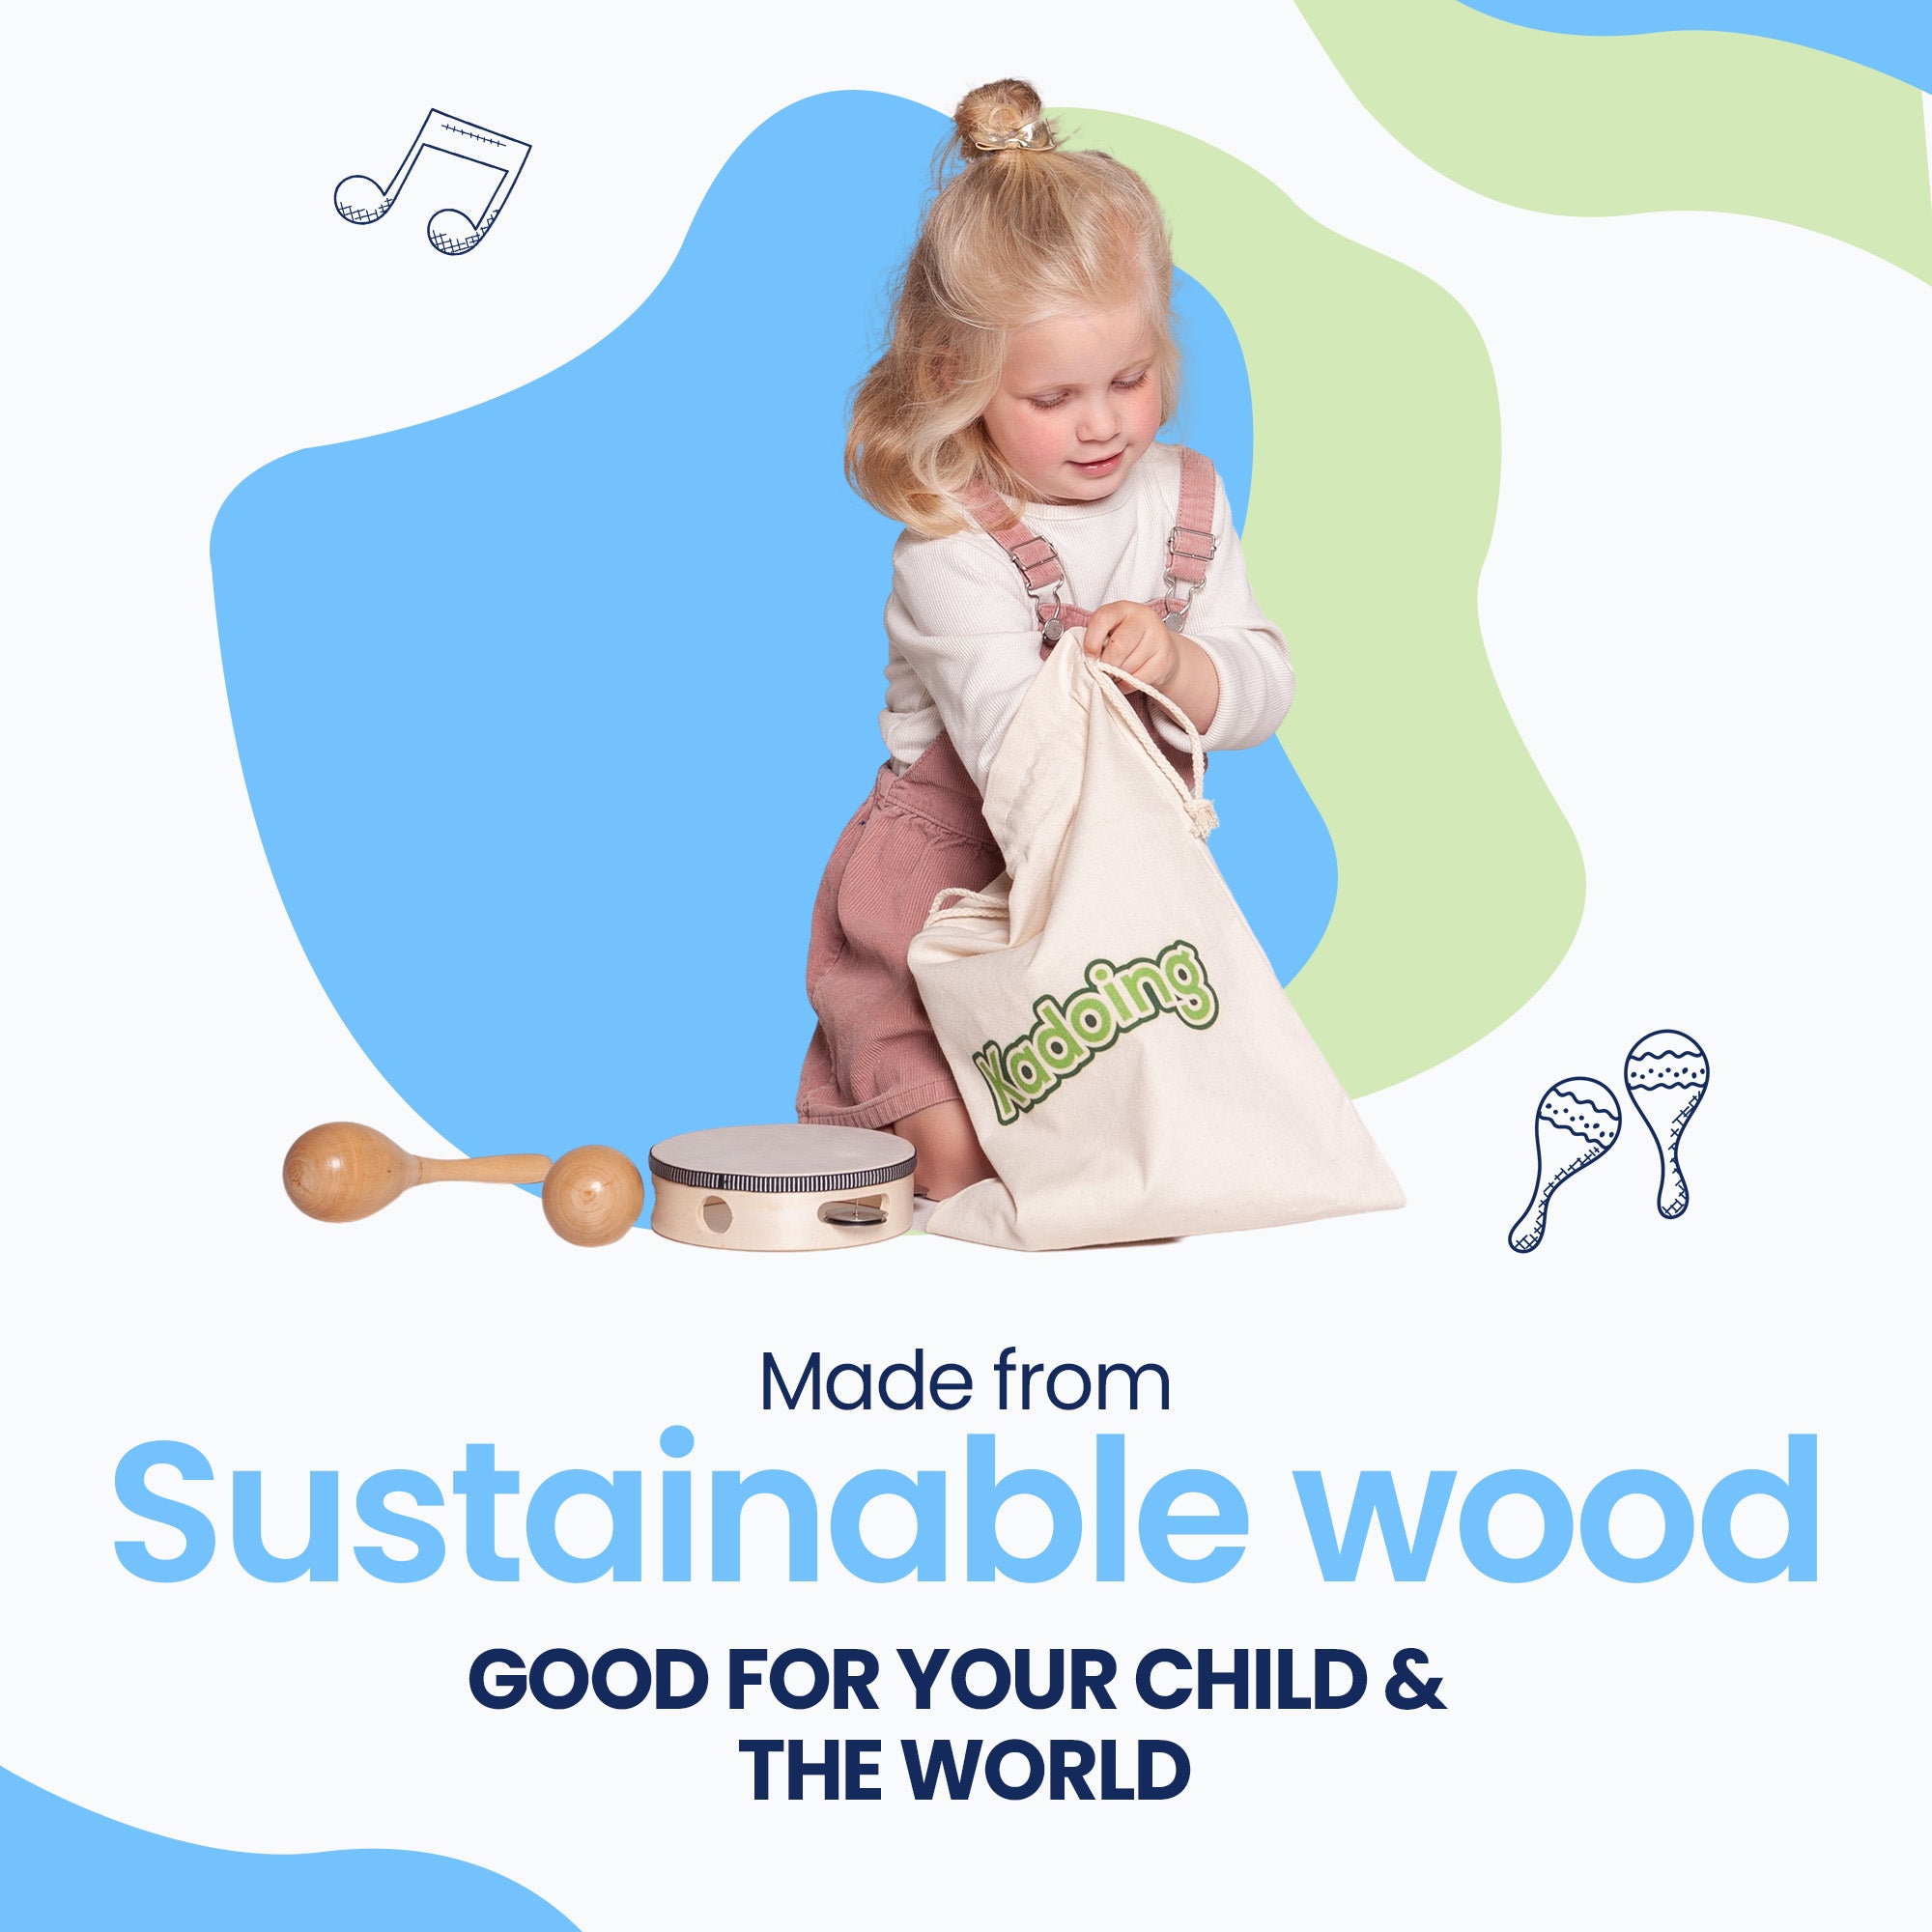 O conjunto de instrumentos musicais é feito de madeira sustentável, como seria de esperar da Kadoing